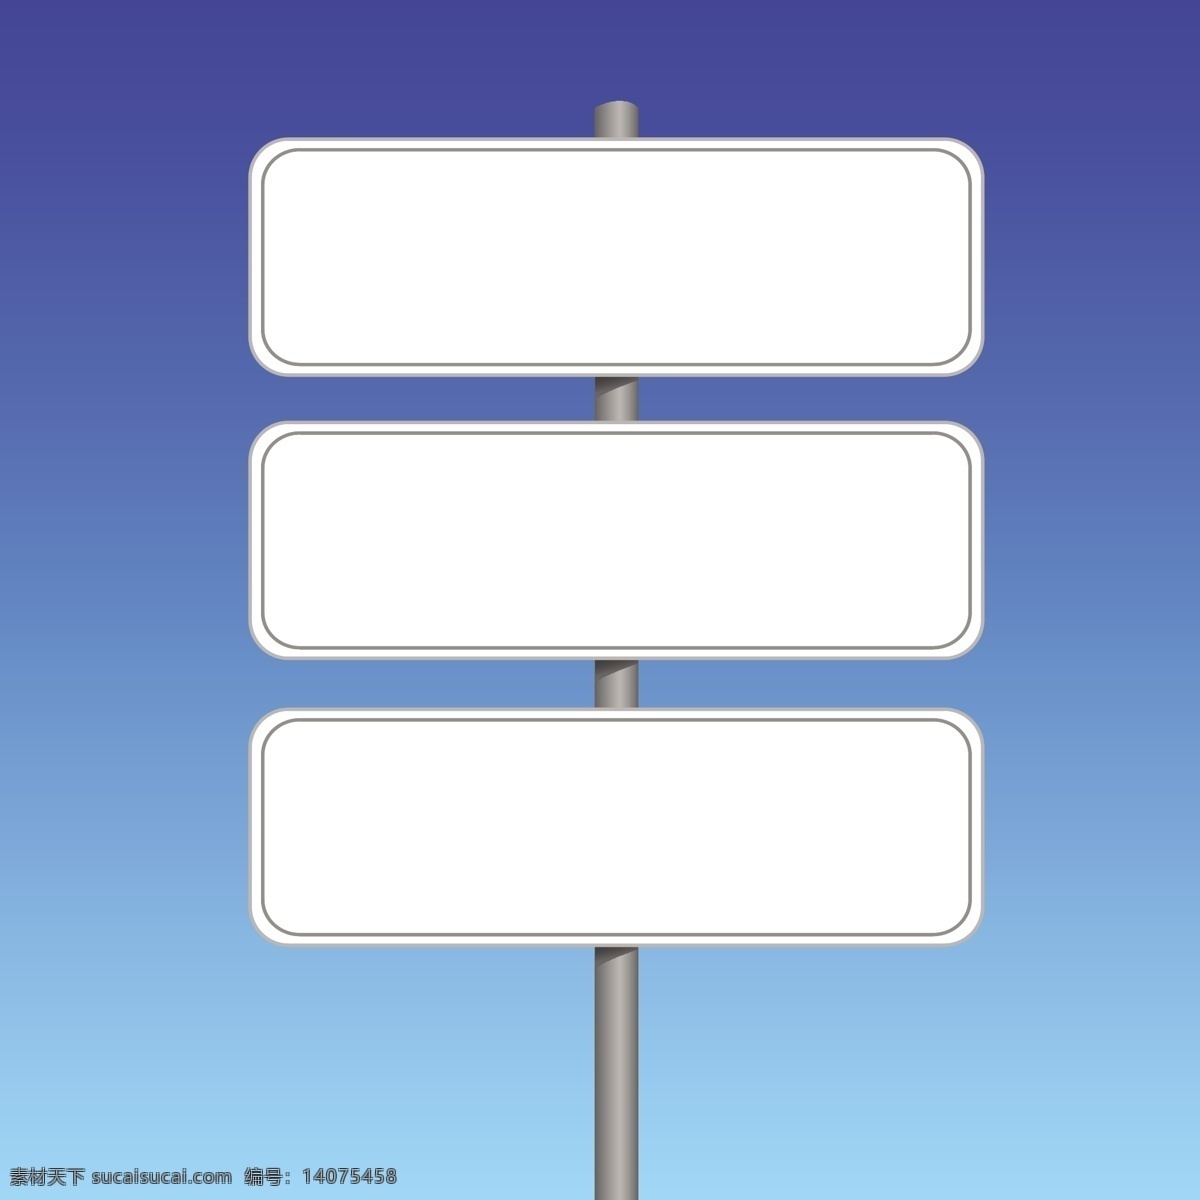 矢量 路牌 白板 导航 方向标 告示板 路标 矢量素材 布告板 矢量图 其他矢量图